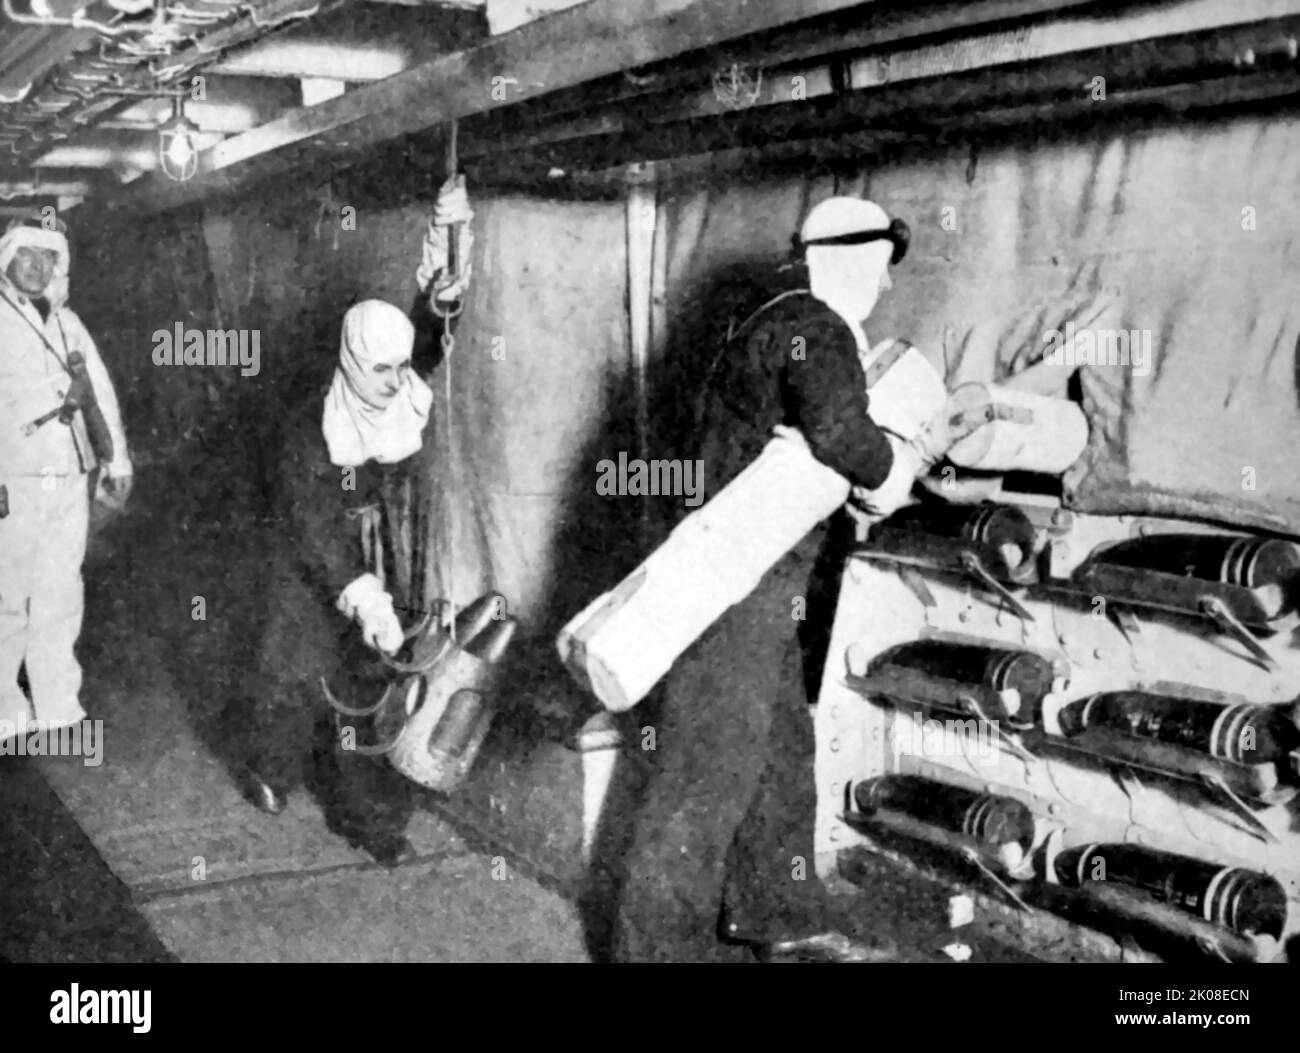 Apparecchiatura anti-lampeggio. Truppe che passavano le accuse ai pistoleri britannici durante la prima guerra mondiale Foto Stock